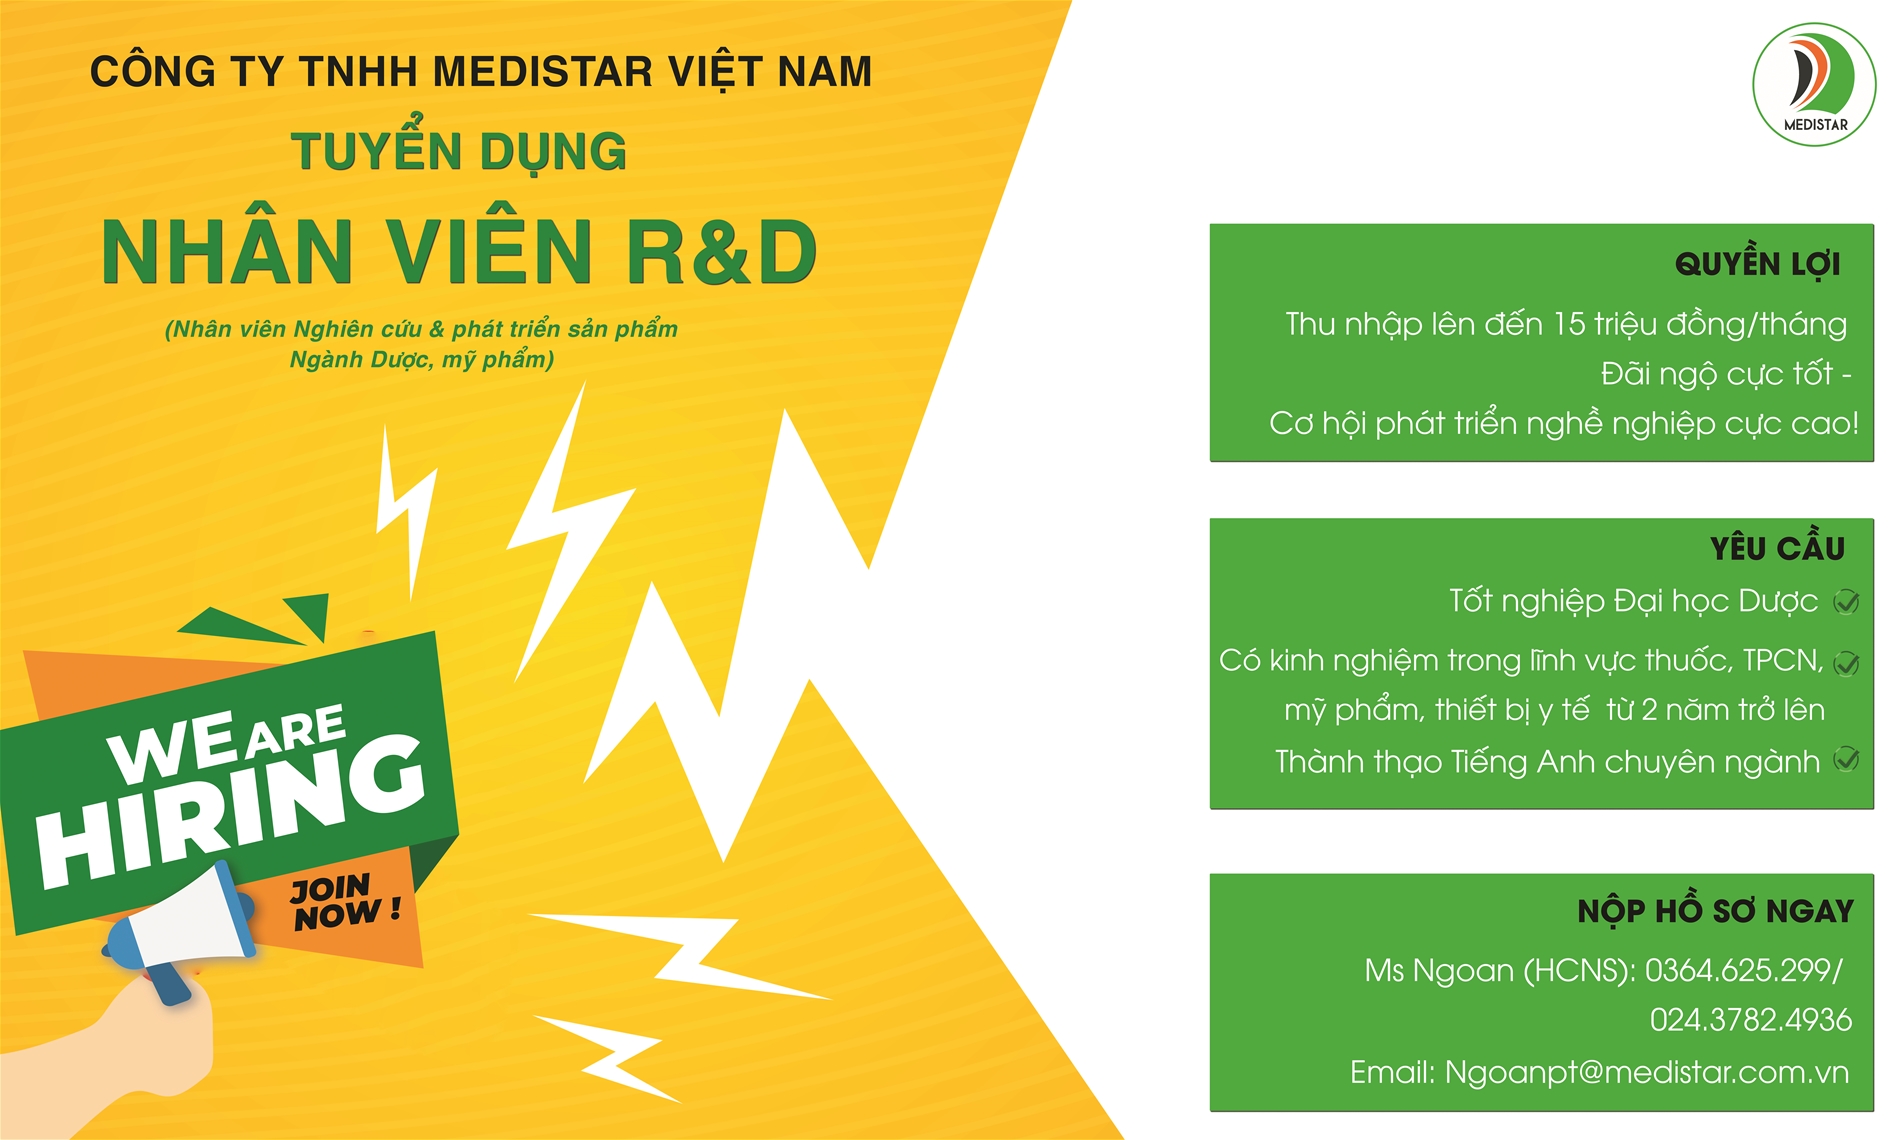 Medistar Việt Nam tuyển dụng nhân viên R&D